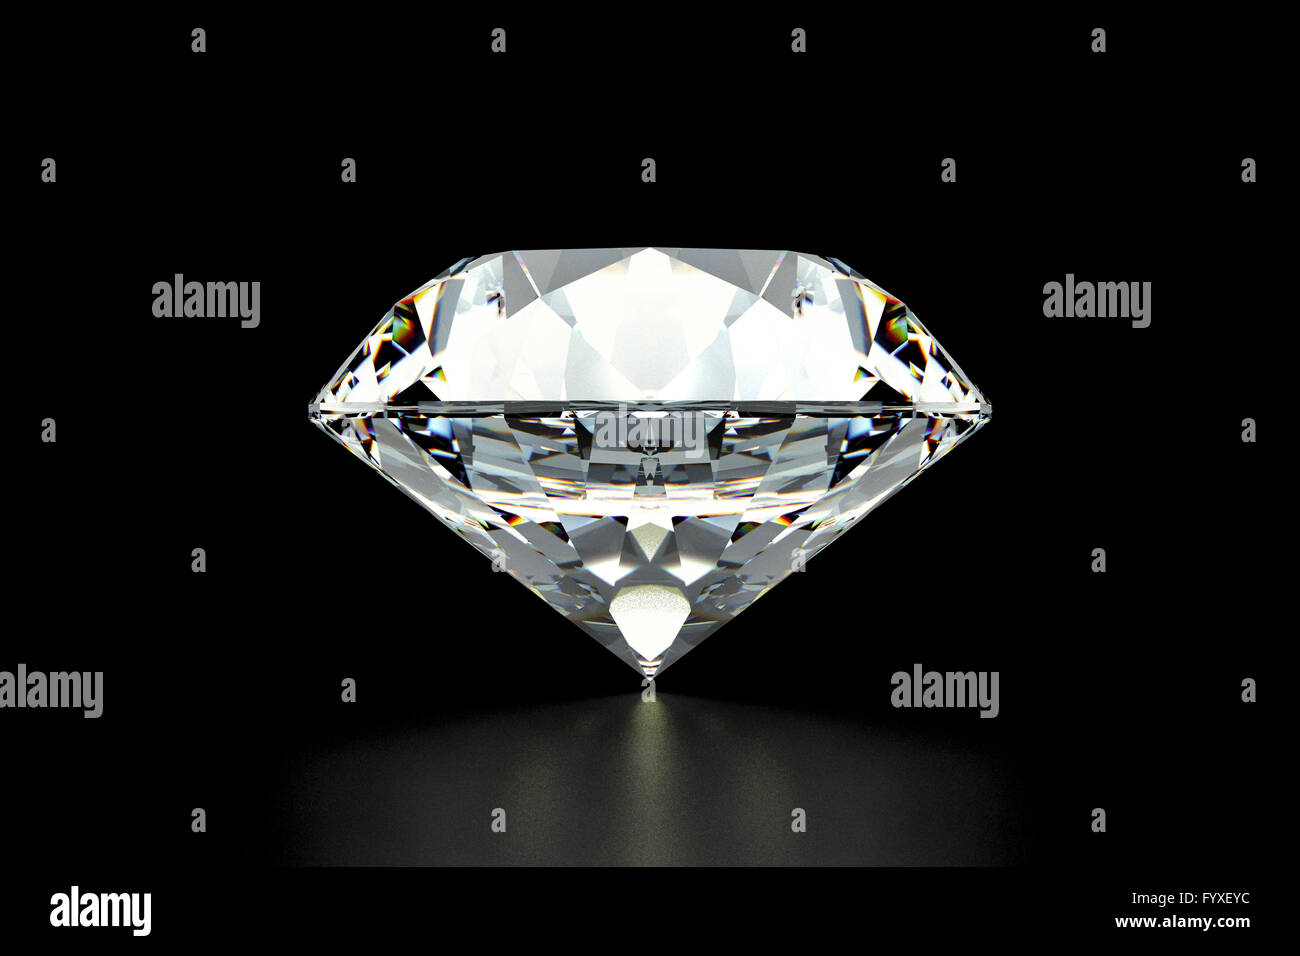 Diamond, Juwel, auf schwarzem Hintergrund Stockfoto